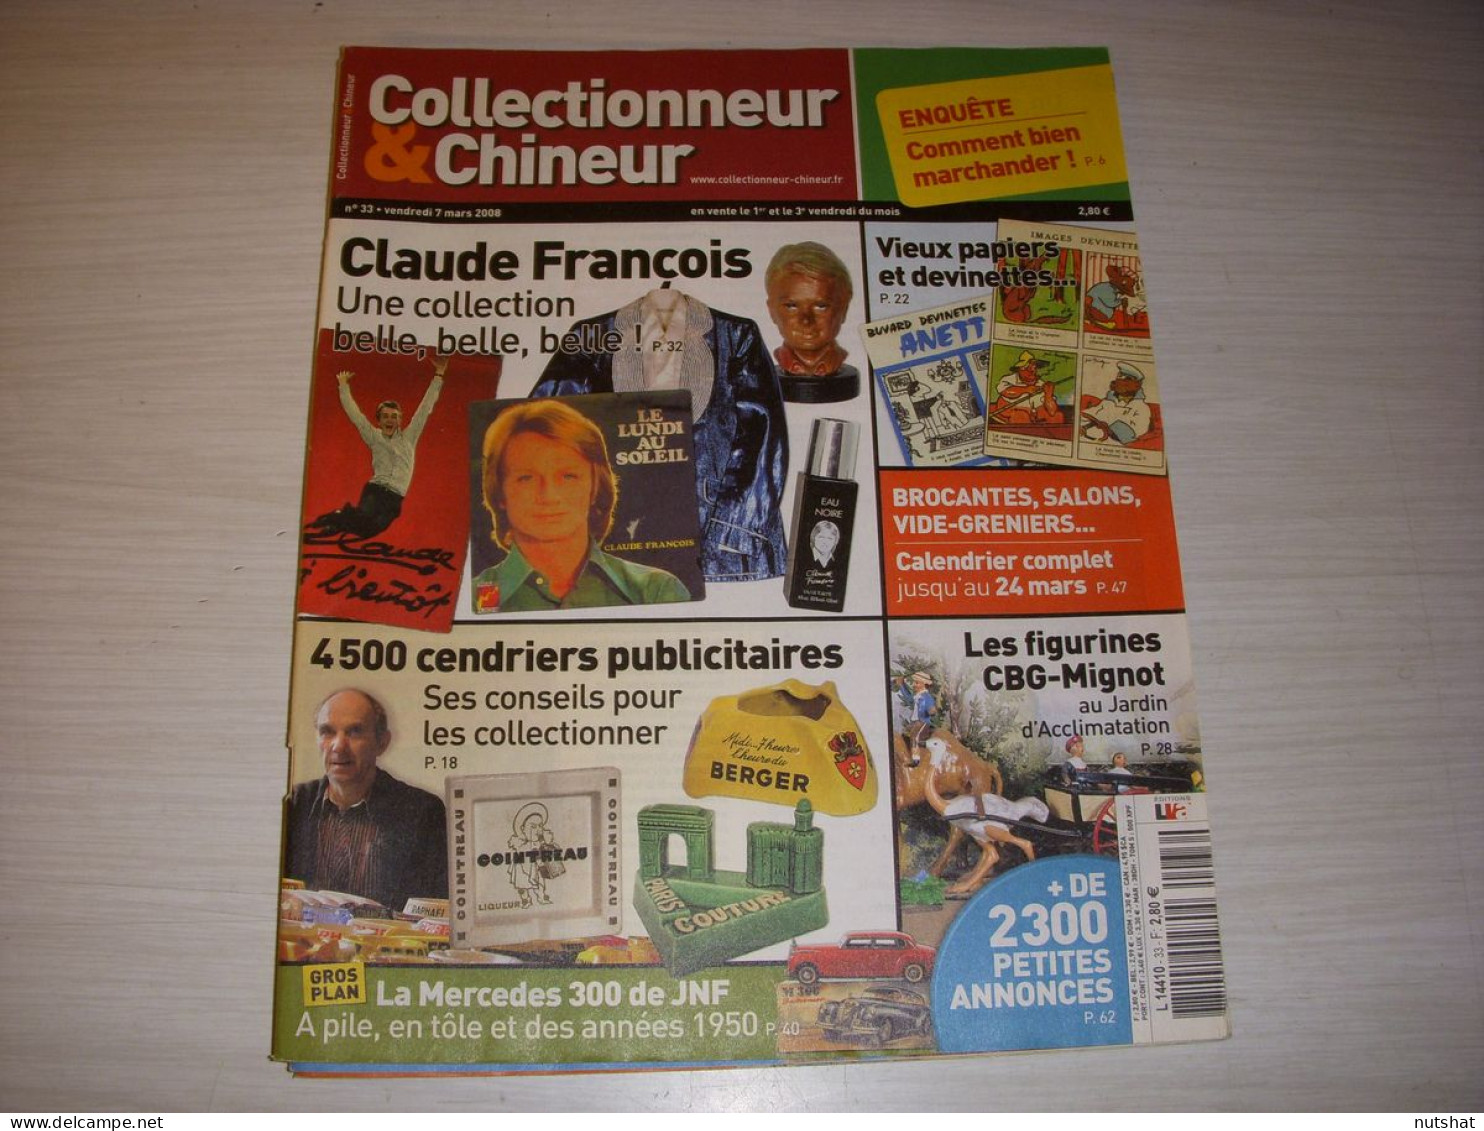 COLLECTIONNEUR CHINEUR 033 07.03.2008 CLAUDE FRANCOIS CENDRIERS PAPIER DEVINETTE - Collectors